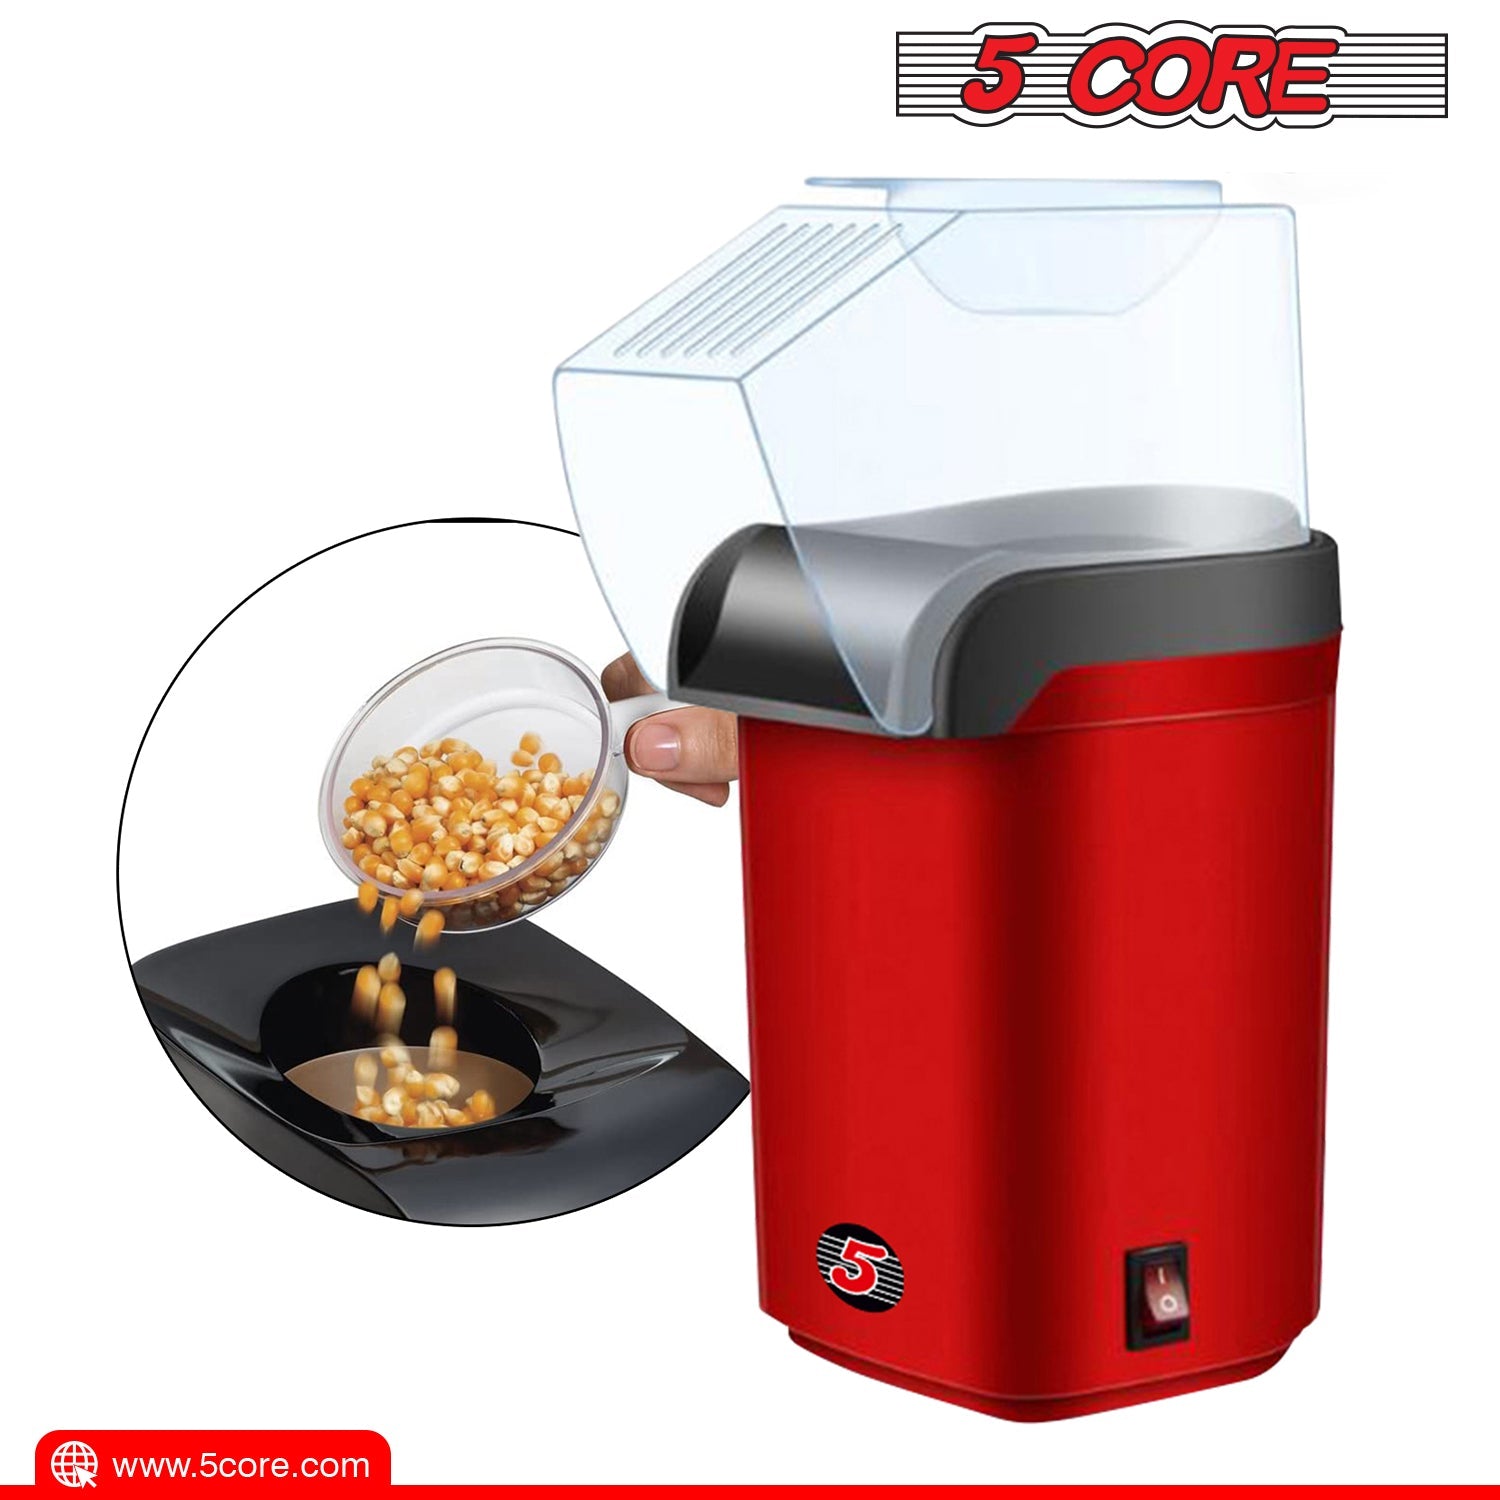 Popcorn Machine Hot Air Electric Popper Kernel Corn Maker - The Big Screen Store